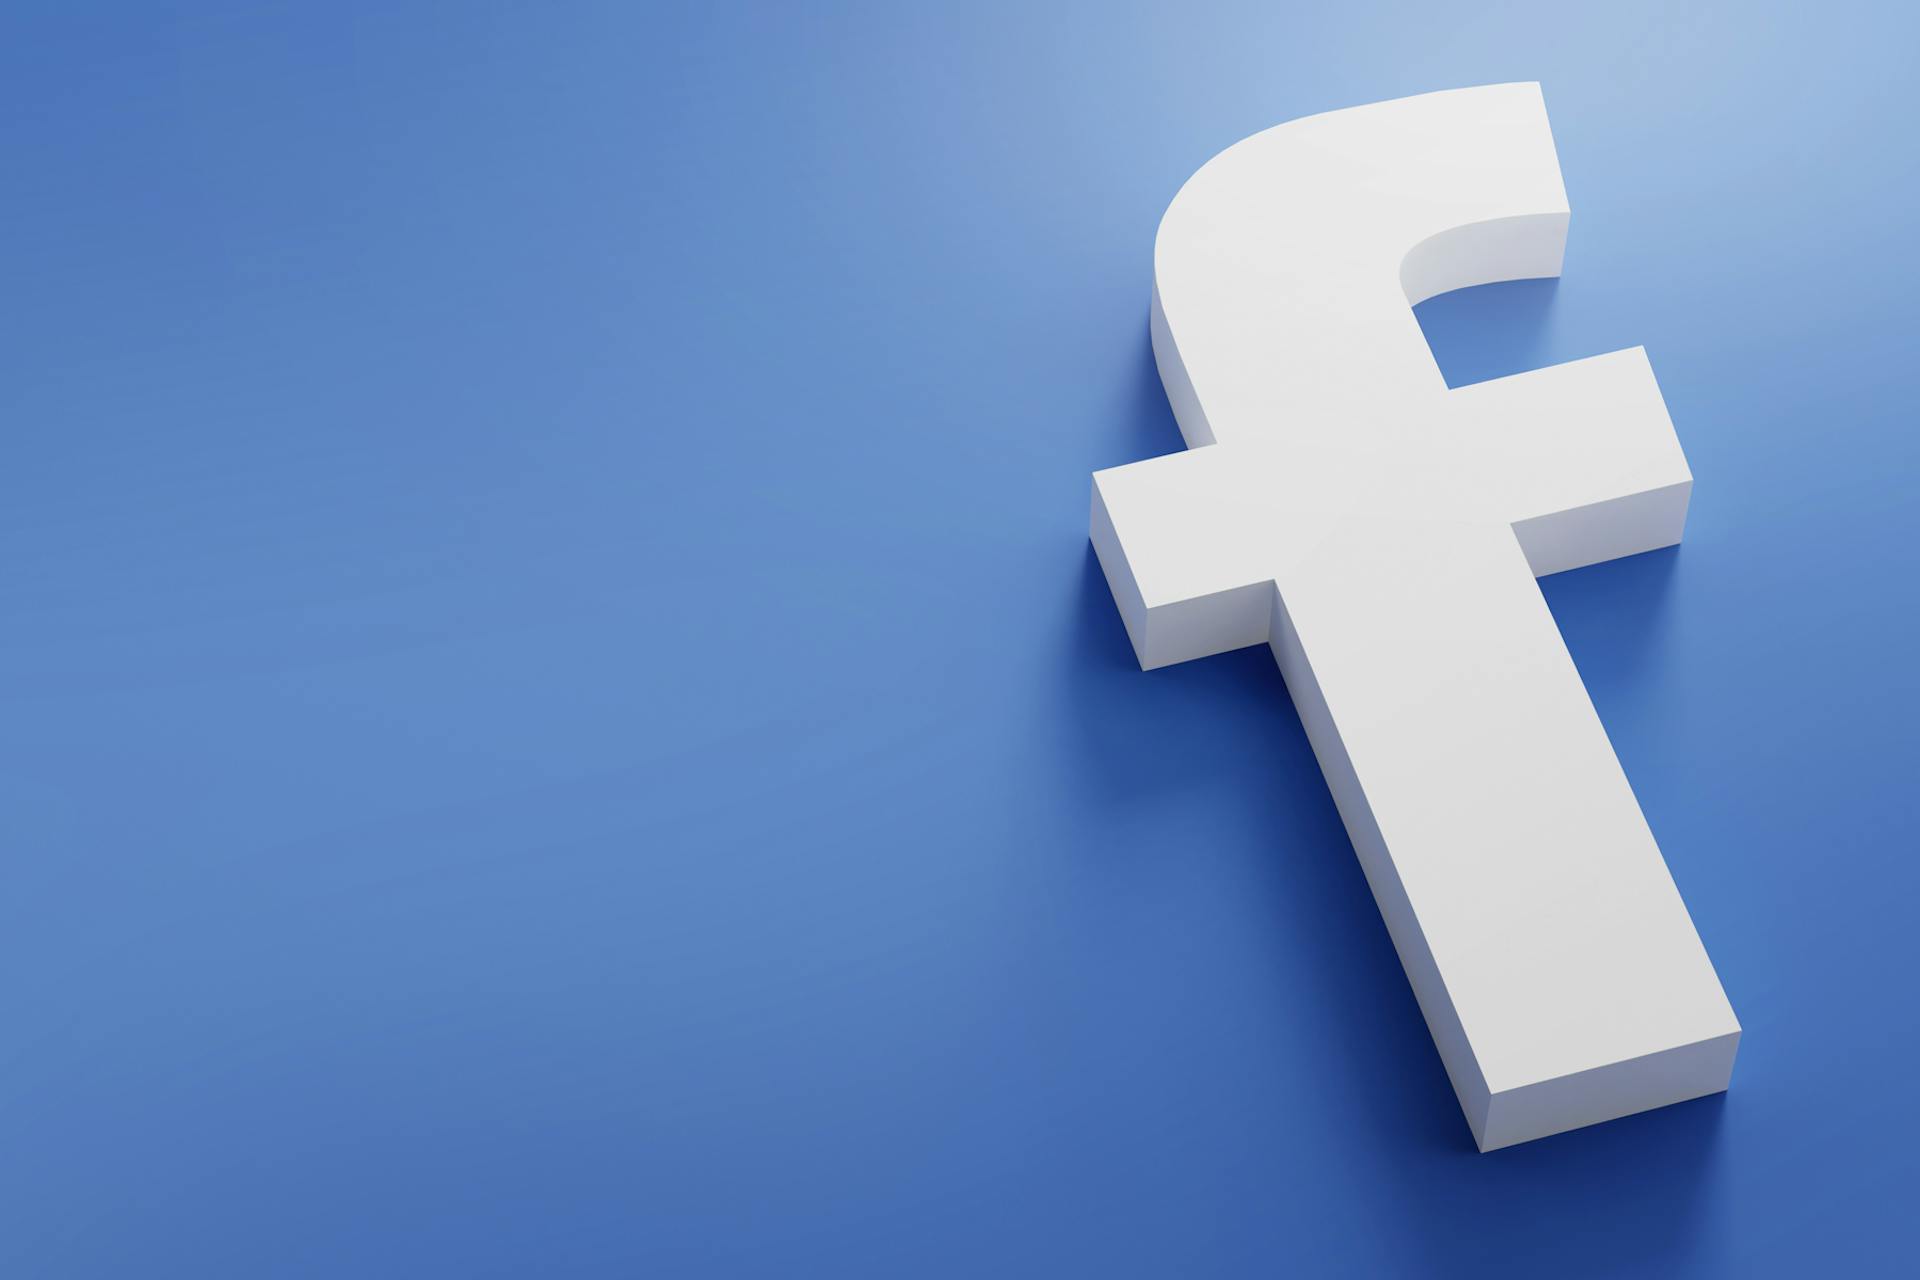 Большой логотип Facebook на синем фоне. Сообщение в блоге с советами по управлению Facebook